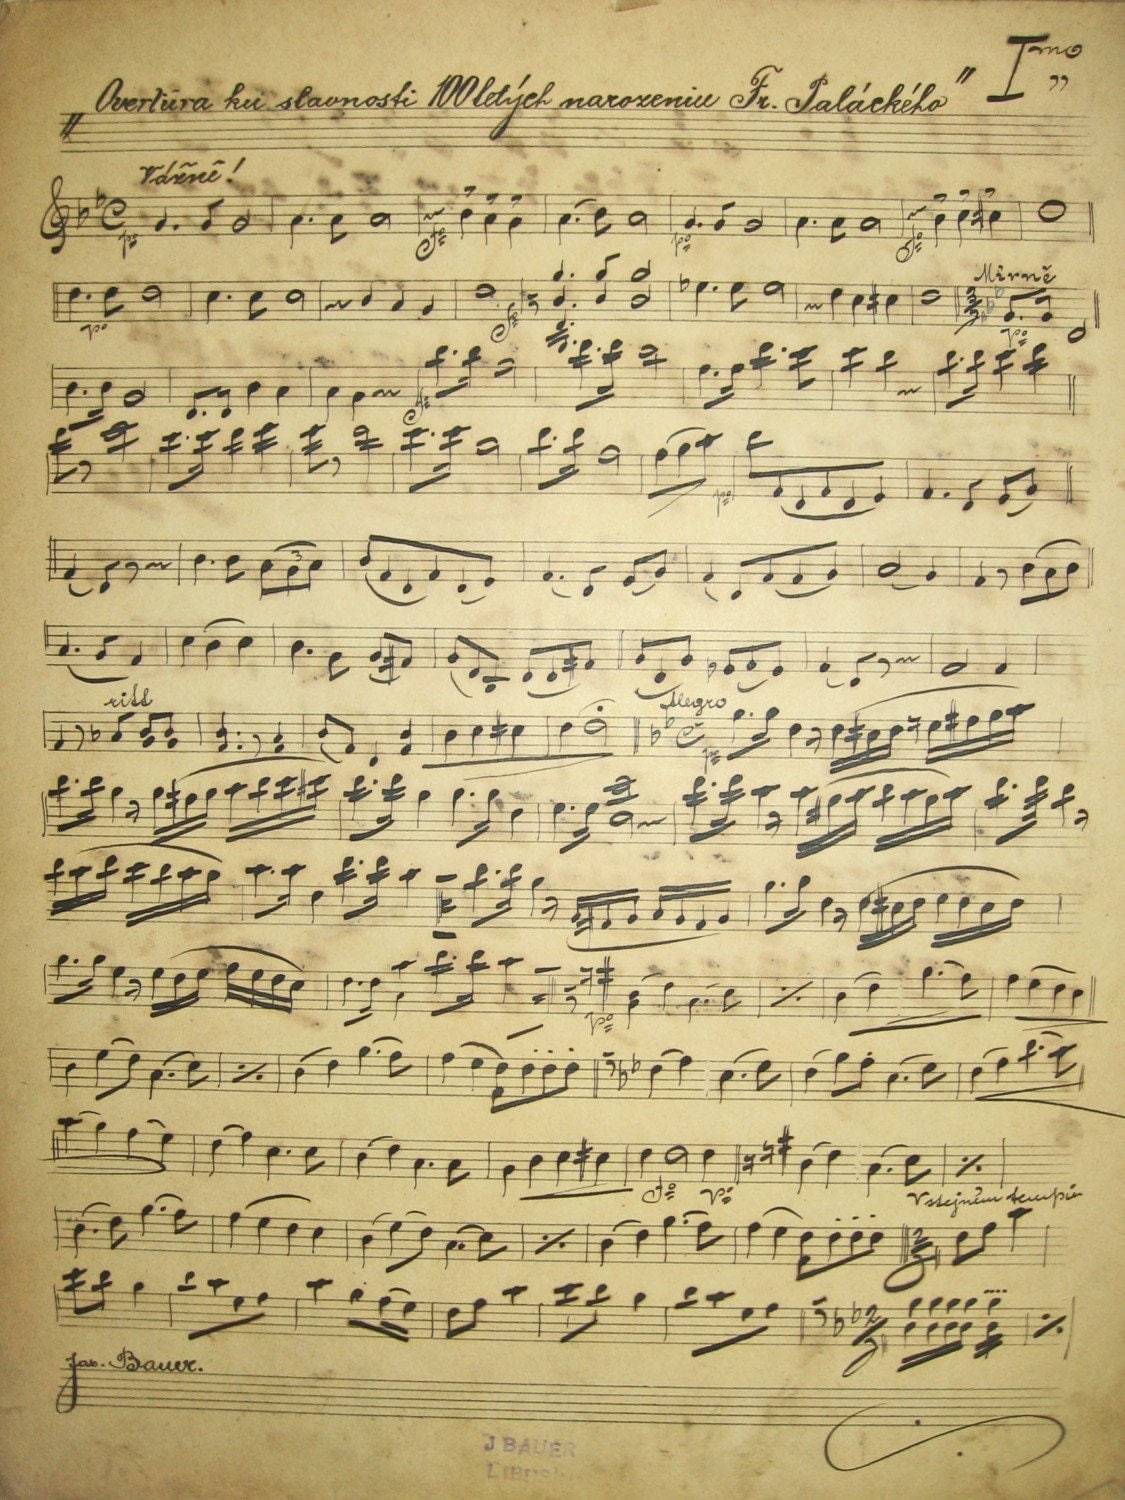 STUNNING Antique Handwritten Sheet Music from 1903 and 1904